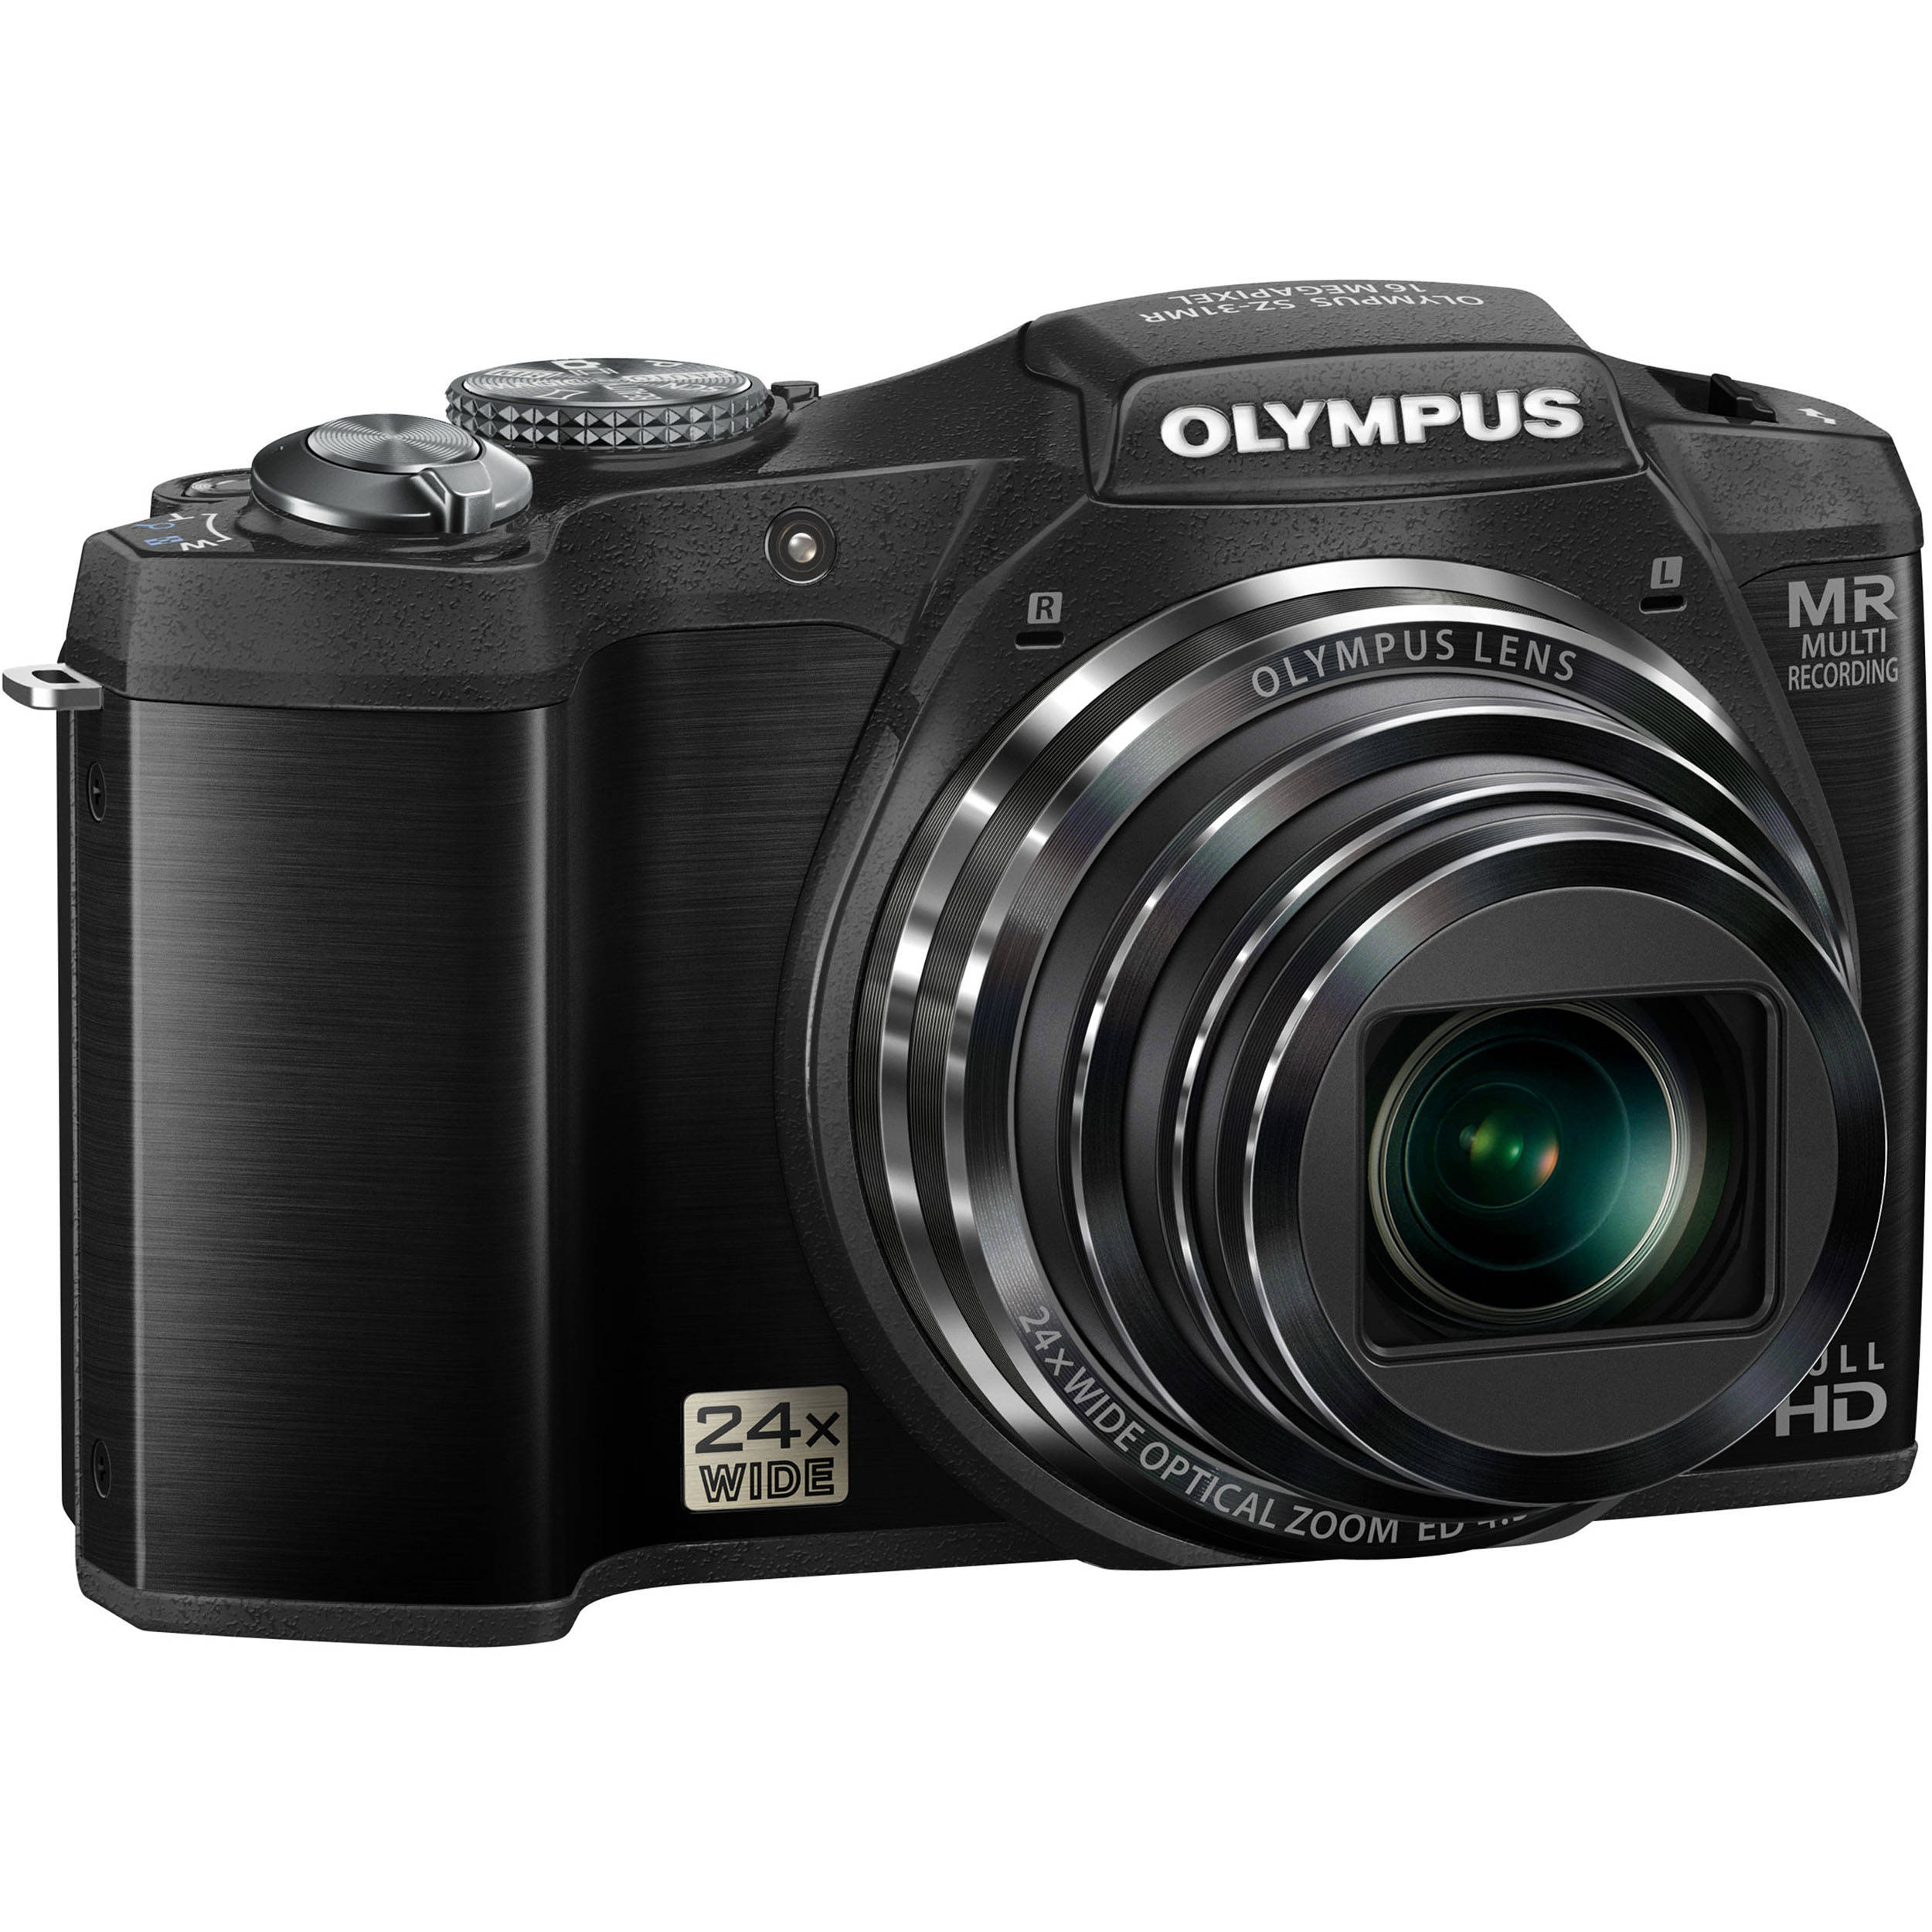 Olympus Sz 31mr Ihs Digital Camera Black V1060bu000 B H